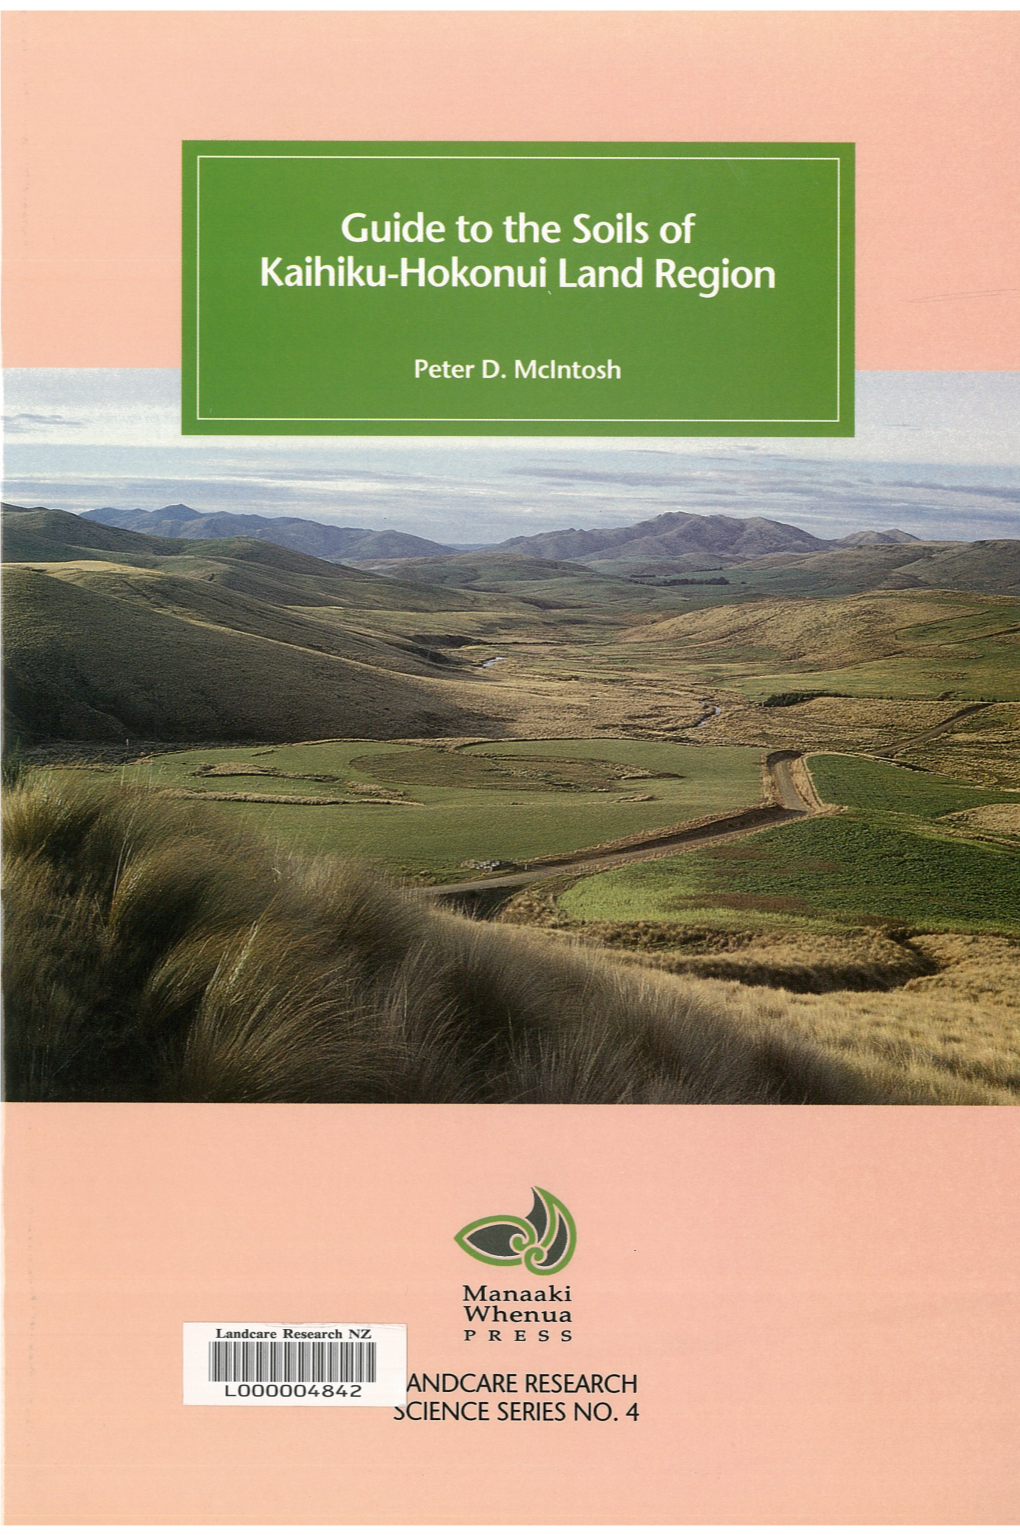 Guide to the Soils of Kaihiku-Hokonui Land Region